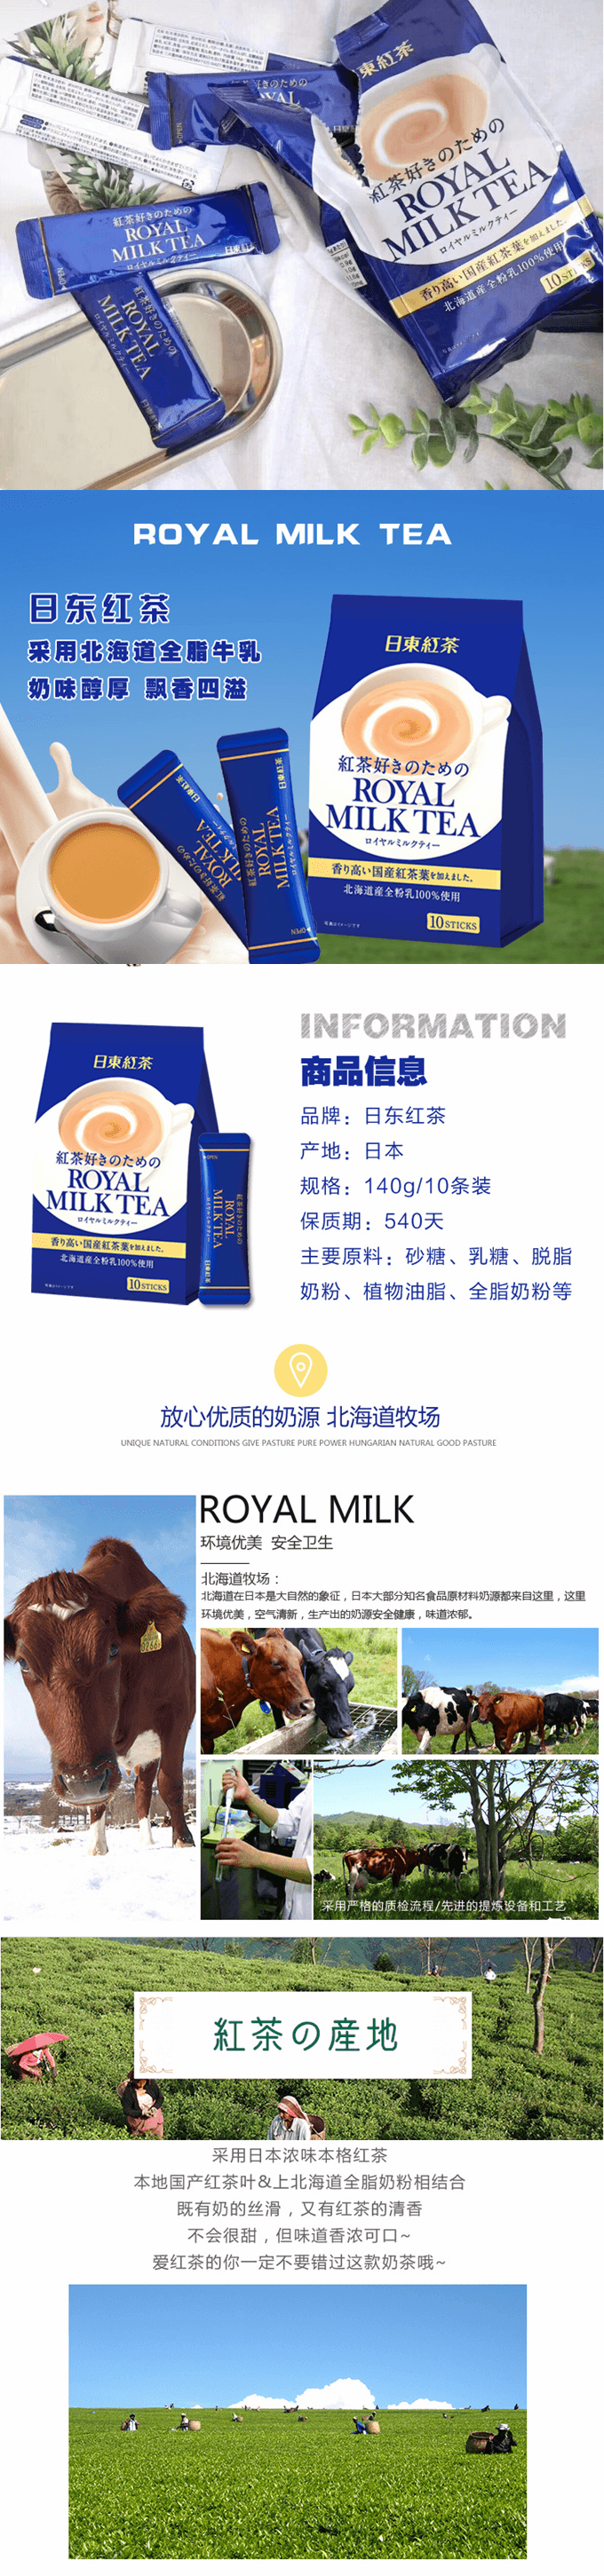 【特价回馈】【日本直邮】日本日东红茶 皇家奶茶醇香奶茶 原味 14g×10条